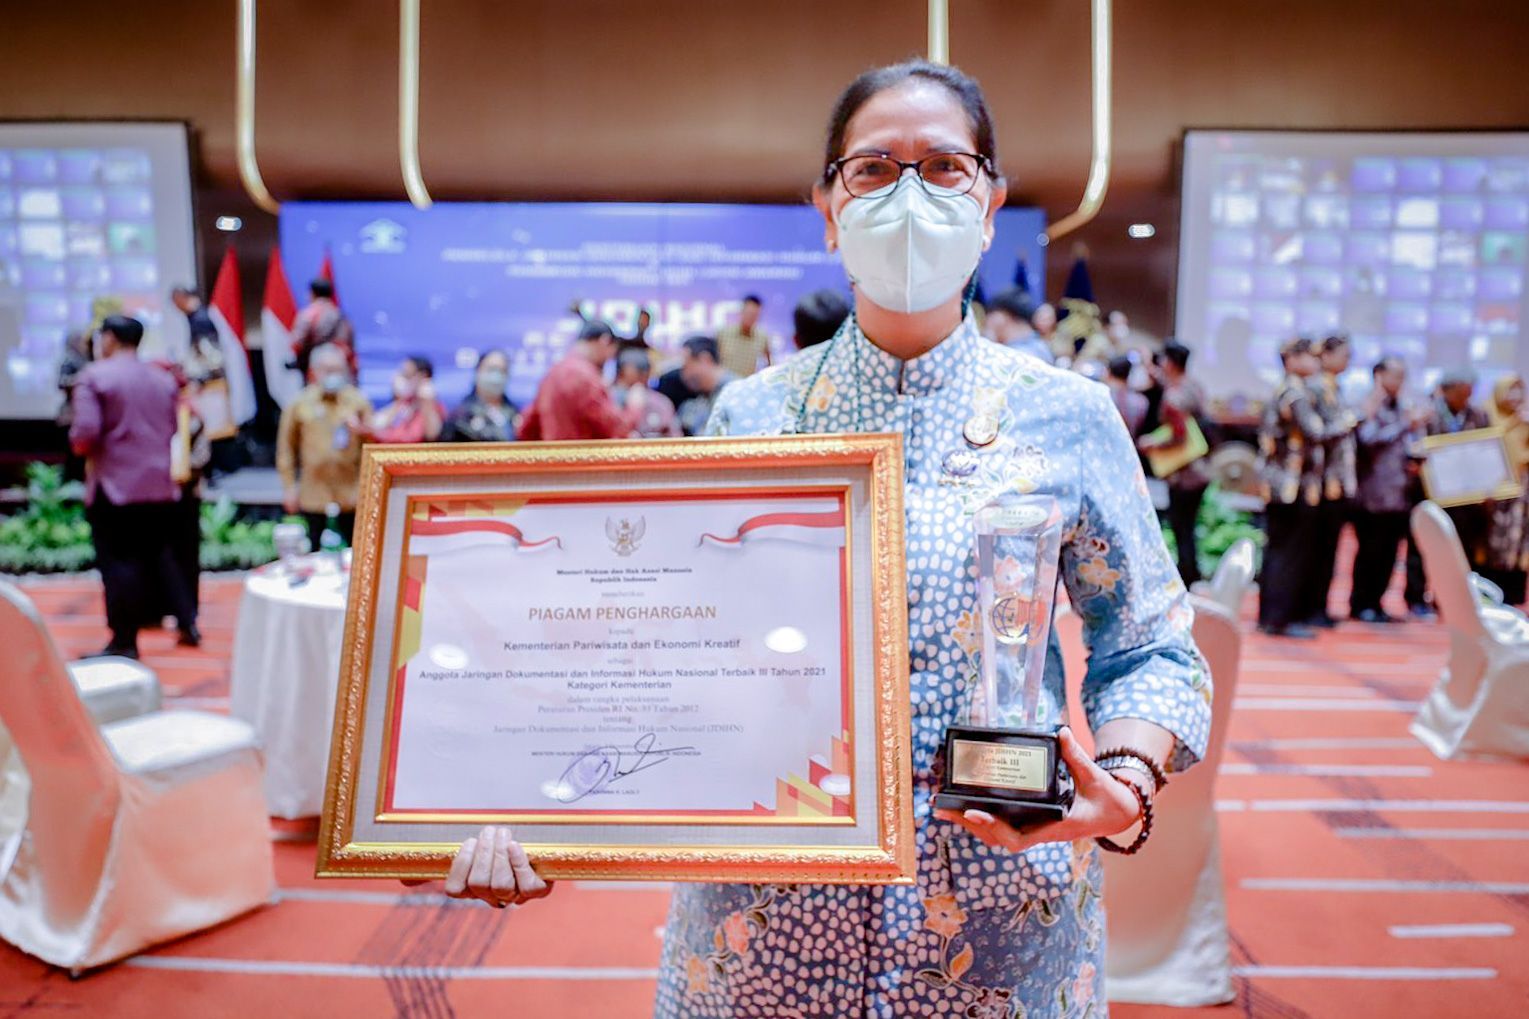 Foto 1: Sekretaris Kemenparekraf Ni Wayan Giri Adnyani menerima penghargaan Anggota Jaringan Dokumentasi dan Informasi Hukum Nasional (JDIHN) Terbaik III (Ketiga) Tahun 2021 pada Kamis, 2 Desember 2021.